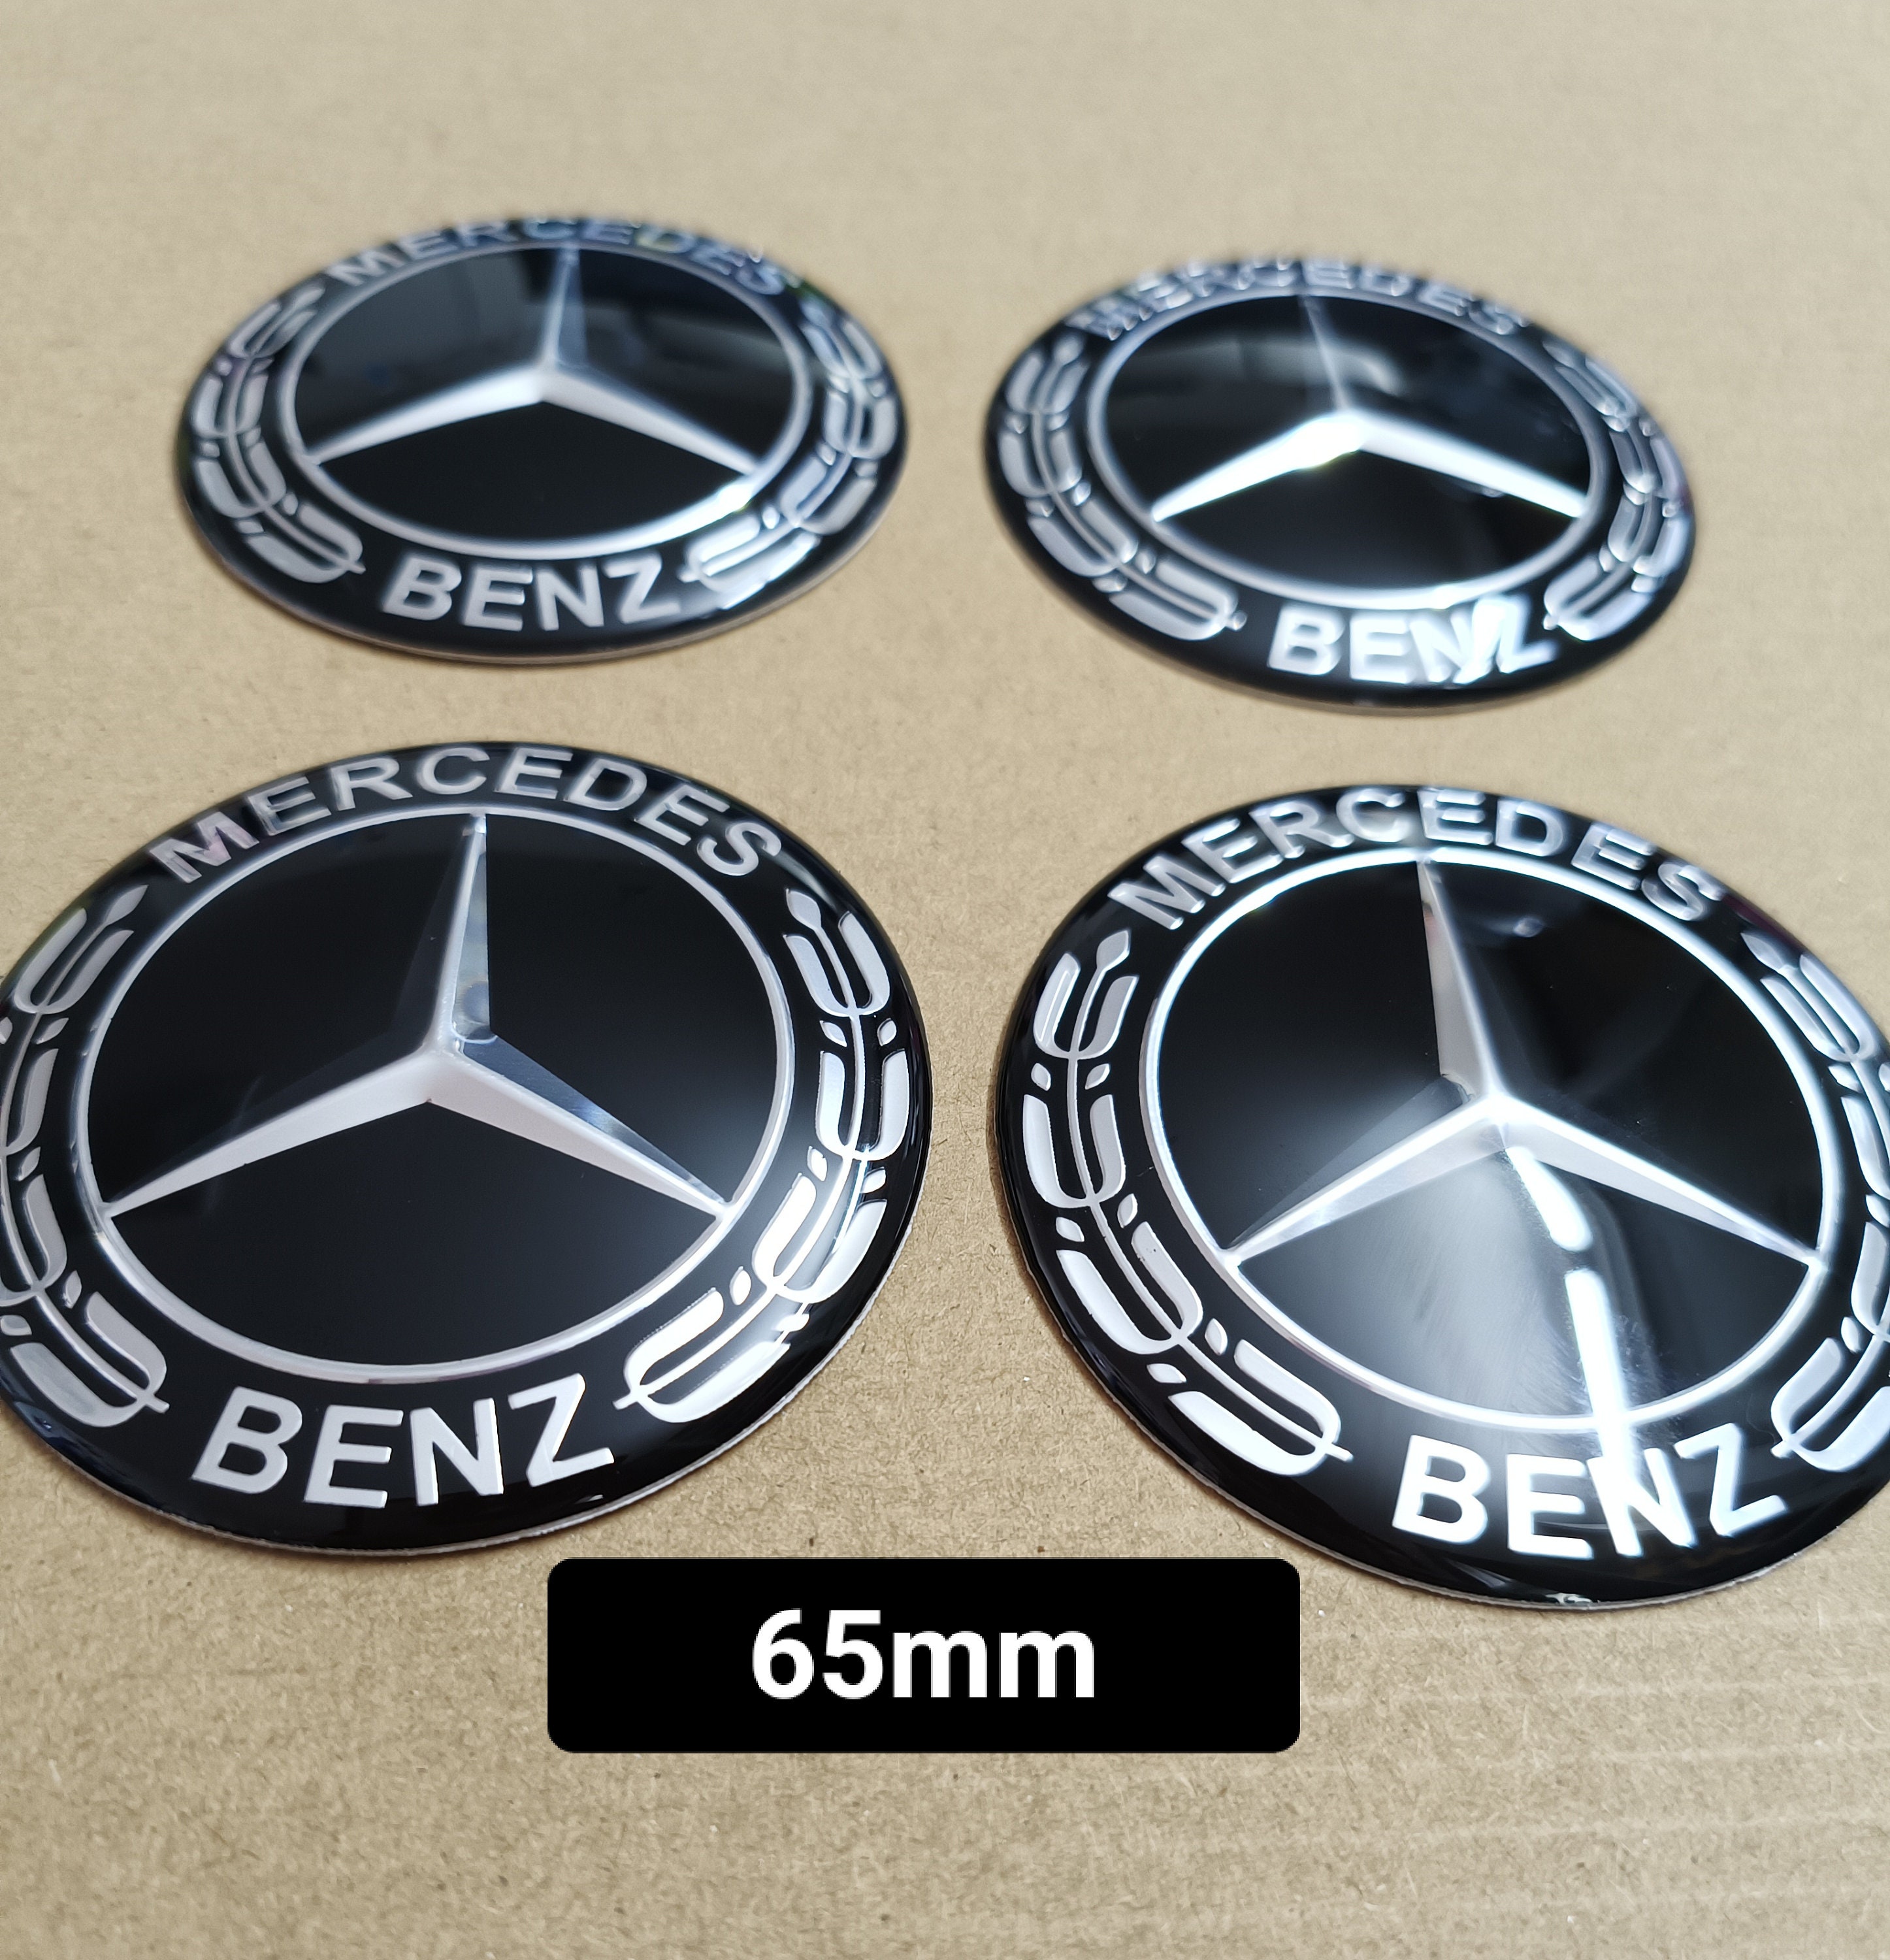 Nabenkappe für Mercedes in Silber/Chrom, 72 mm Durchmesser, 1 Stück - ATU